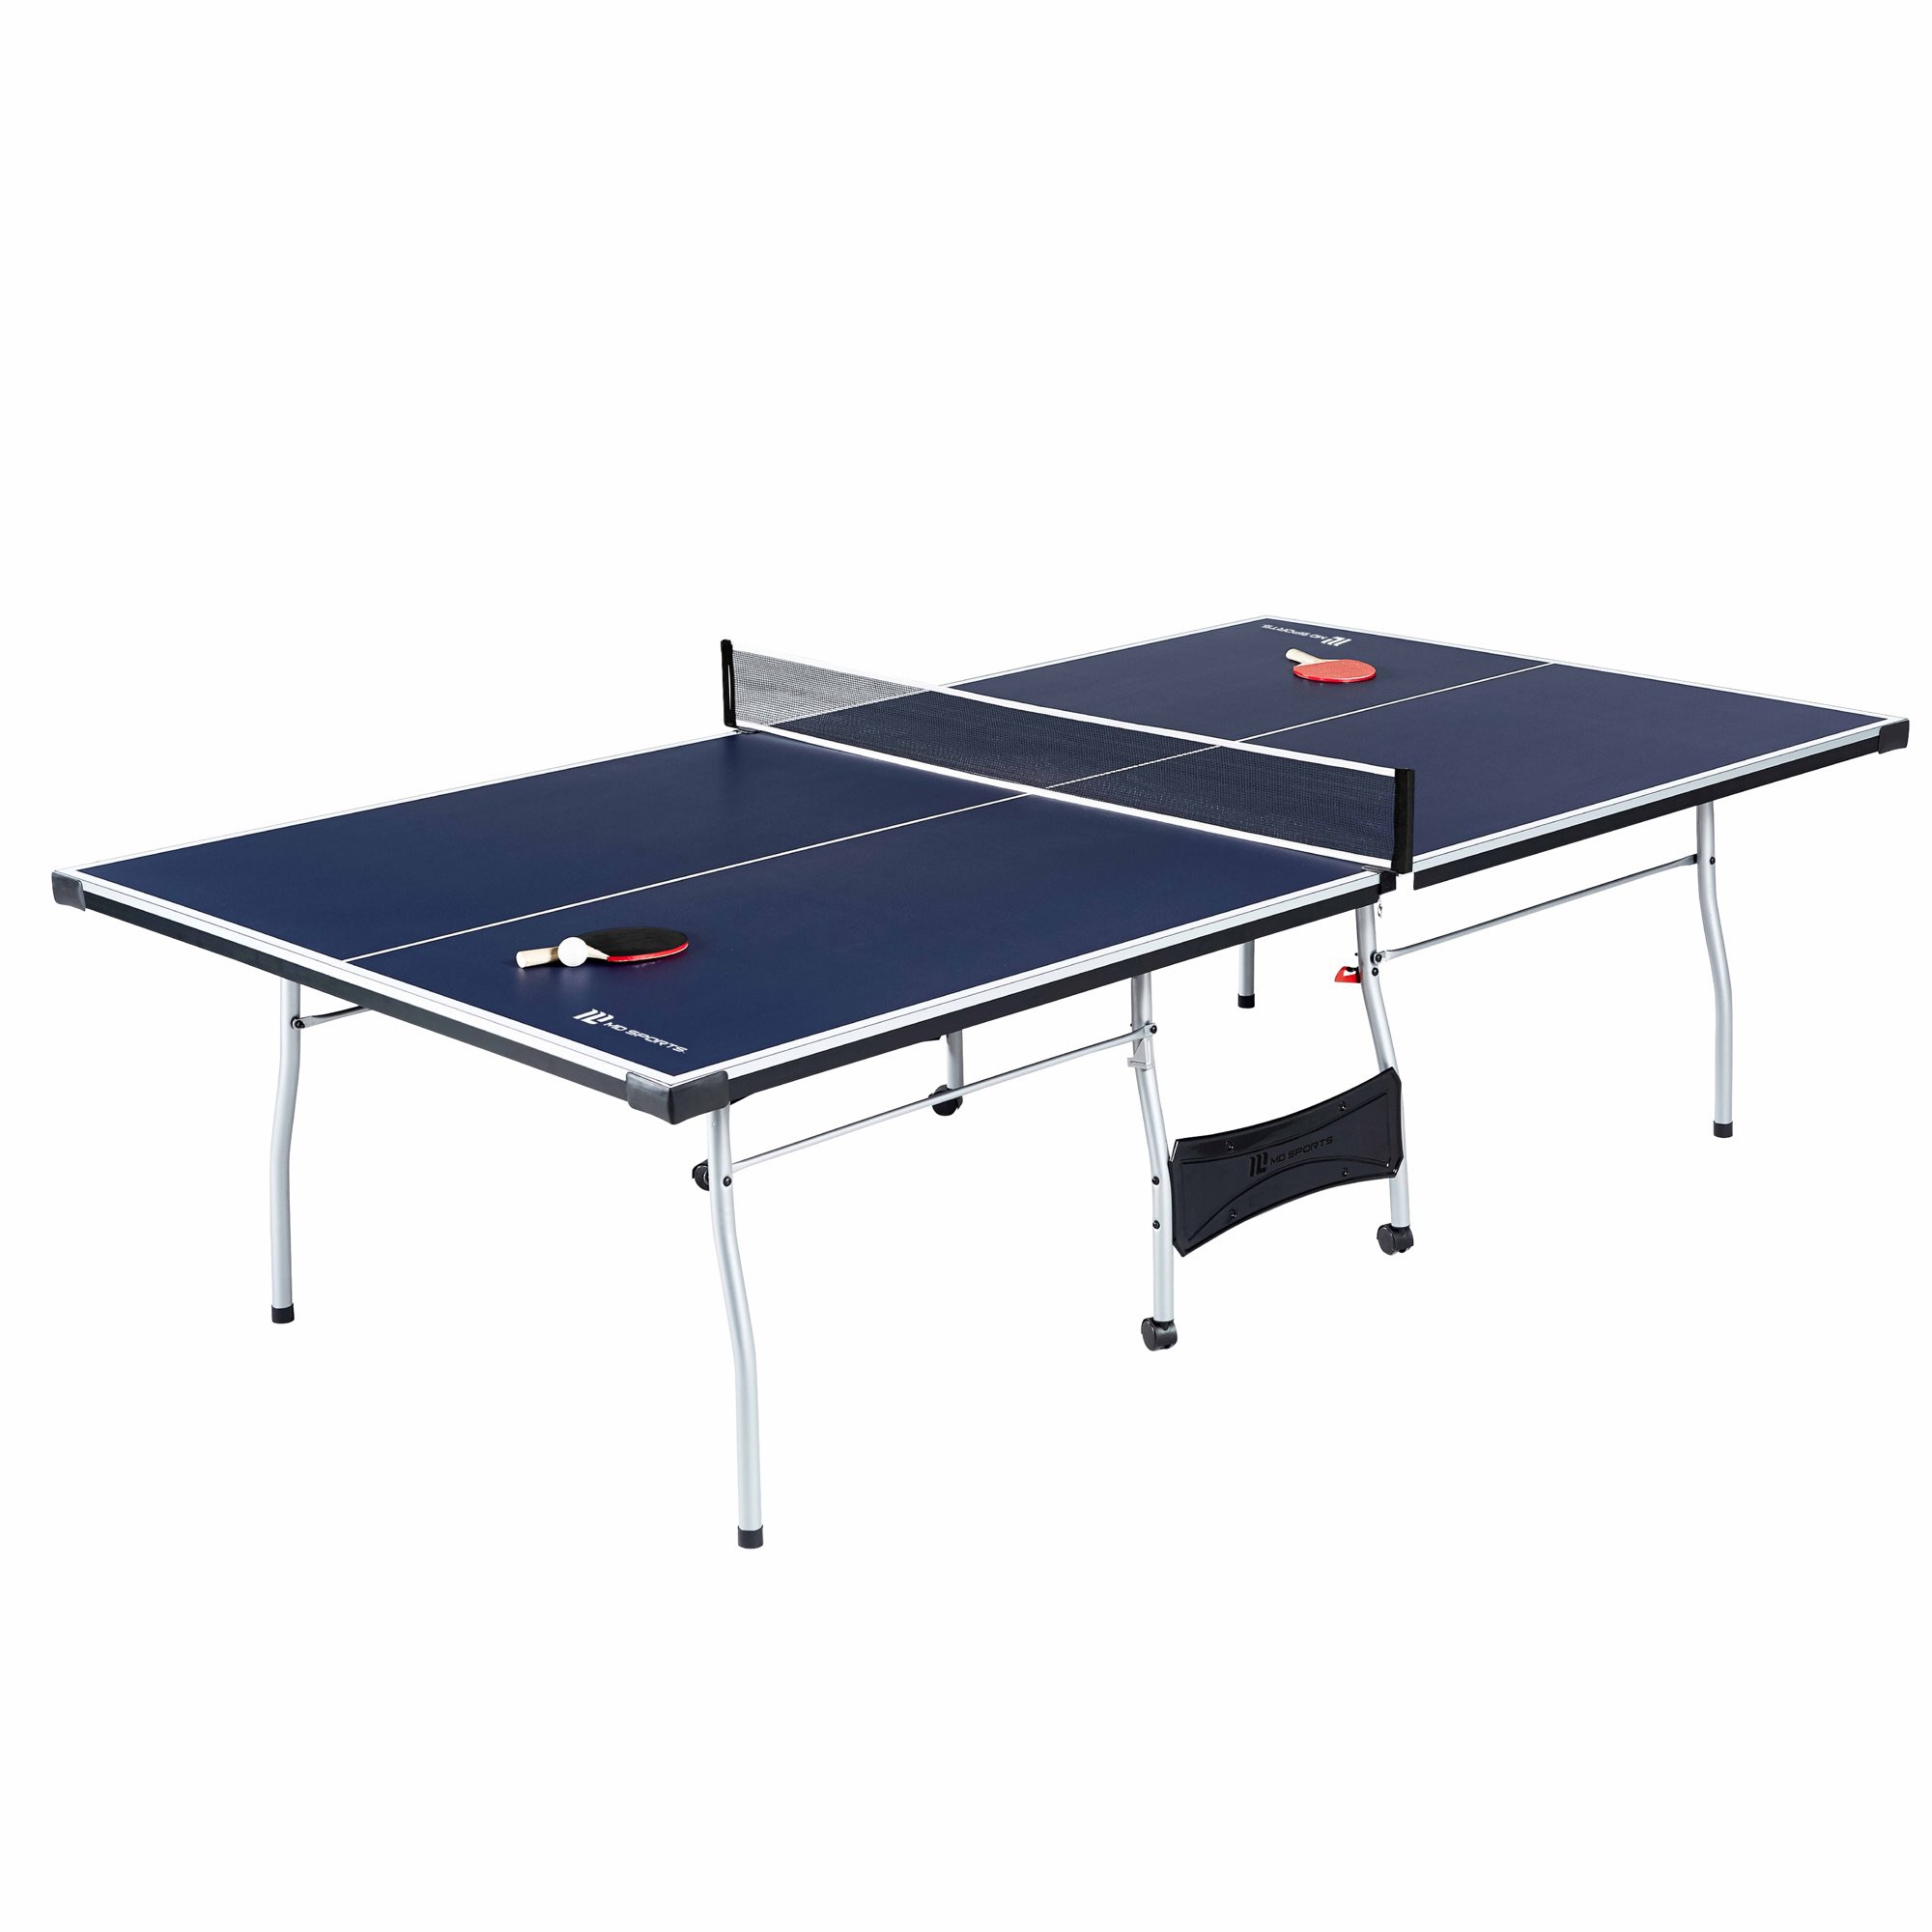 乒乓球桌MD Sports Official Size 15mm 4 Piece Indoor Table Tennis Tennis, Accessories Included, Blue/White - Walmart.com - Walmart.com